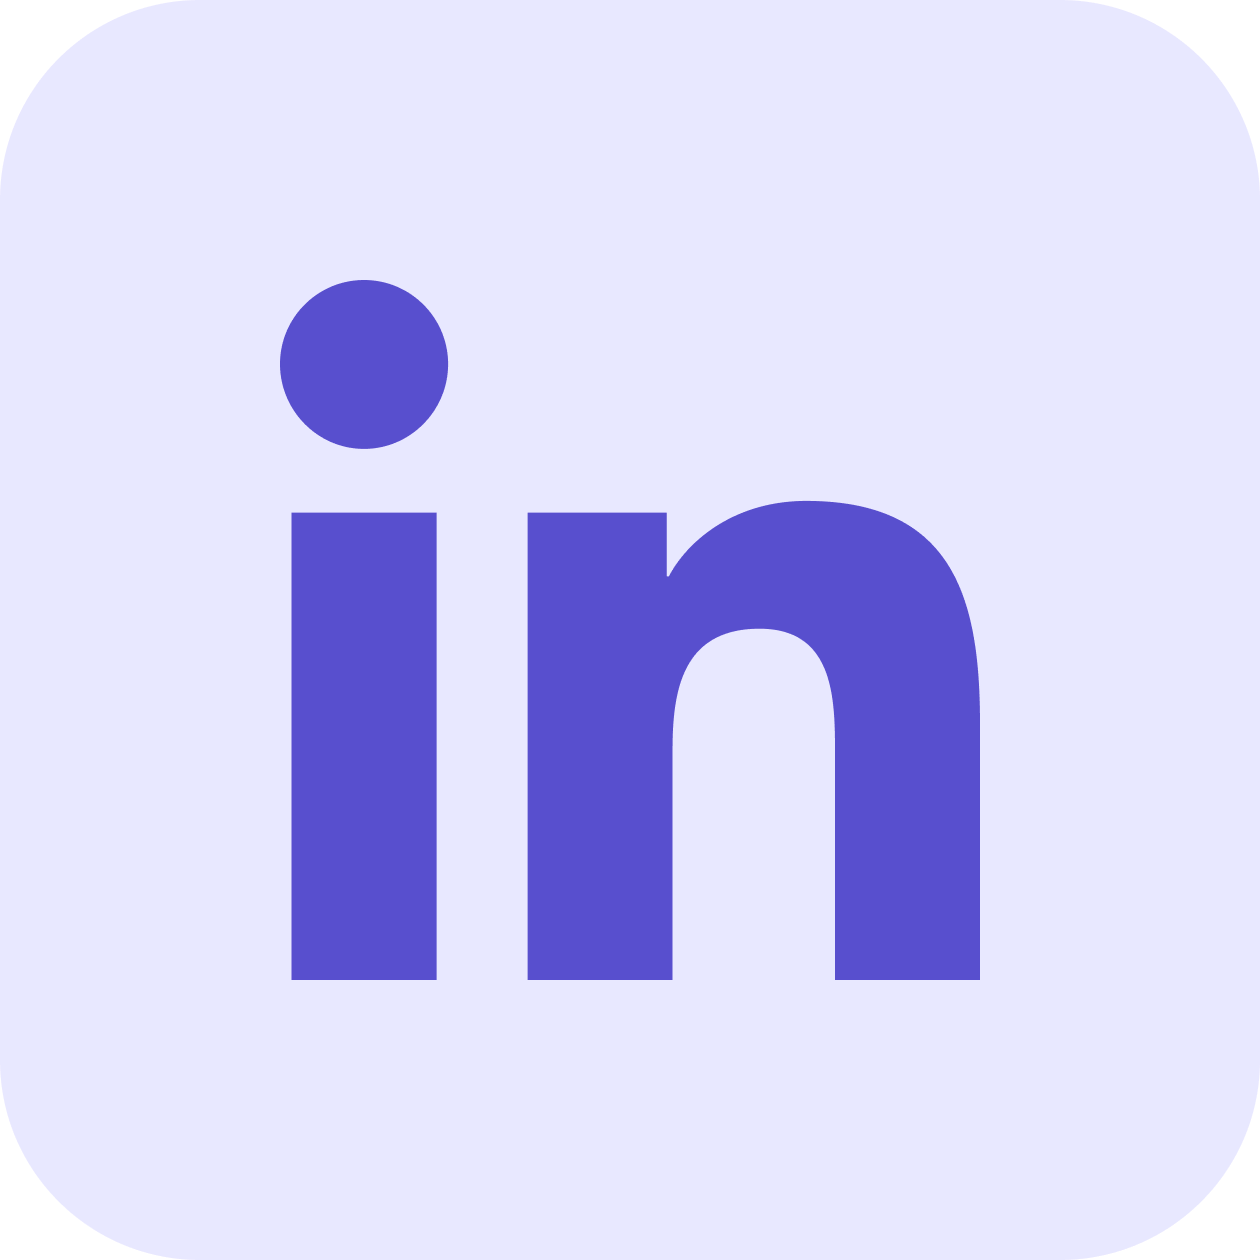 Prospect on LinkedIn using Data Chroma